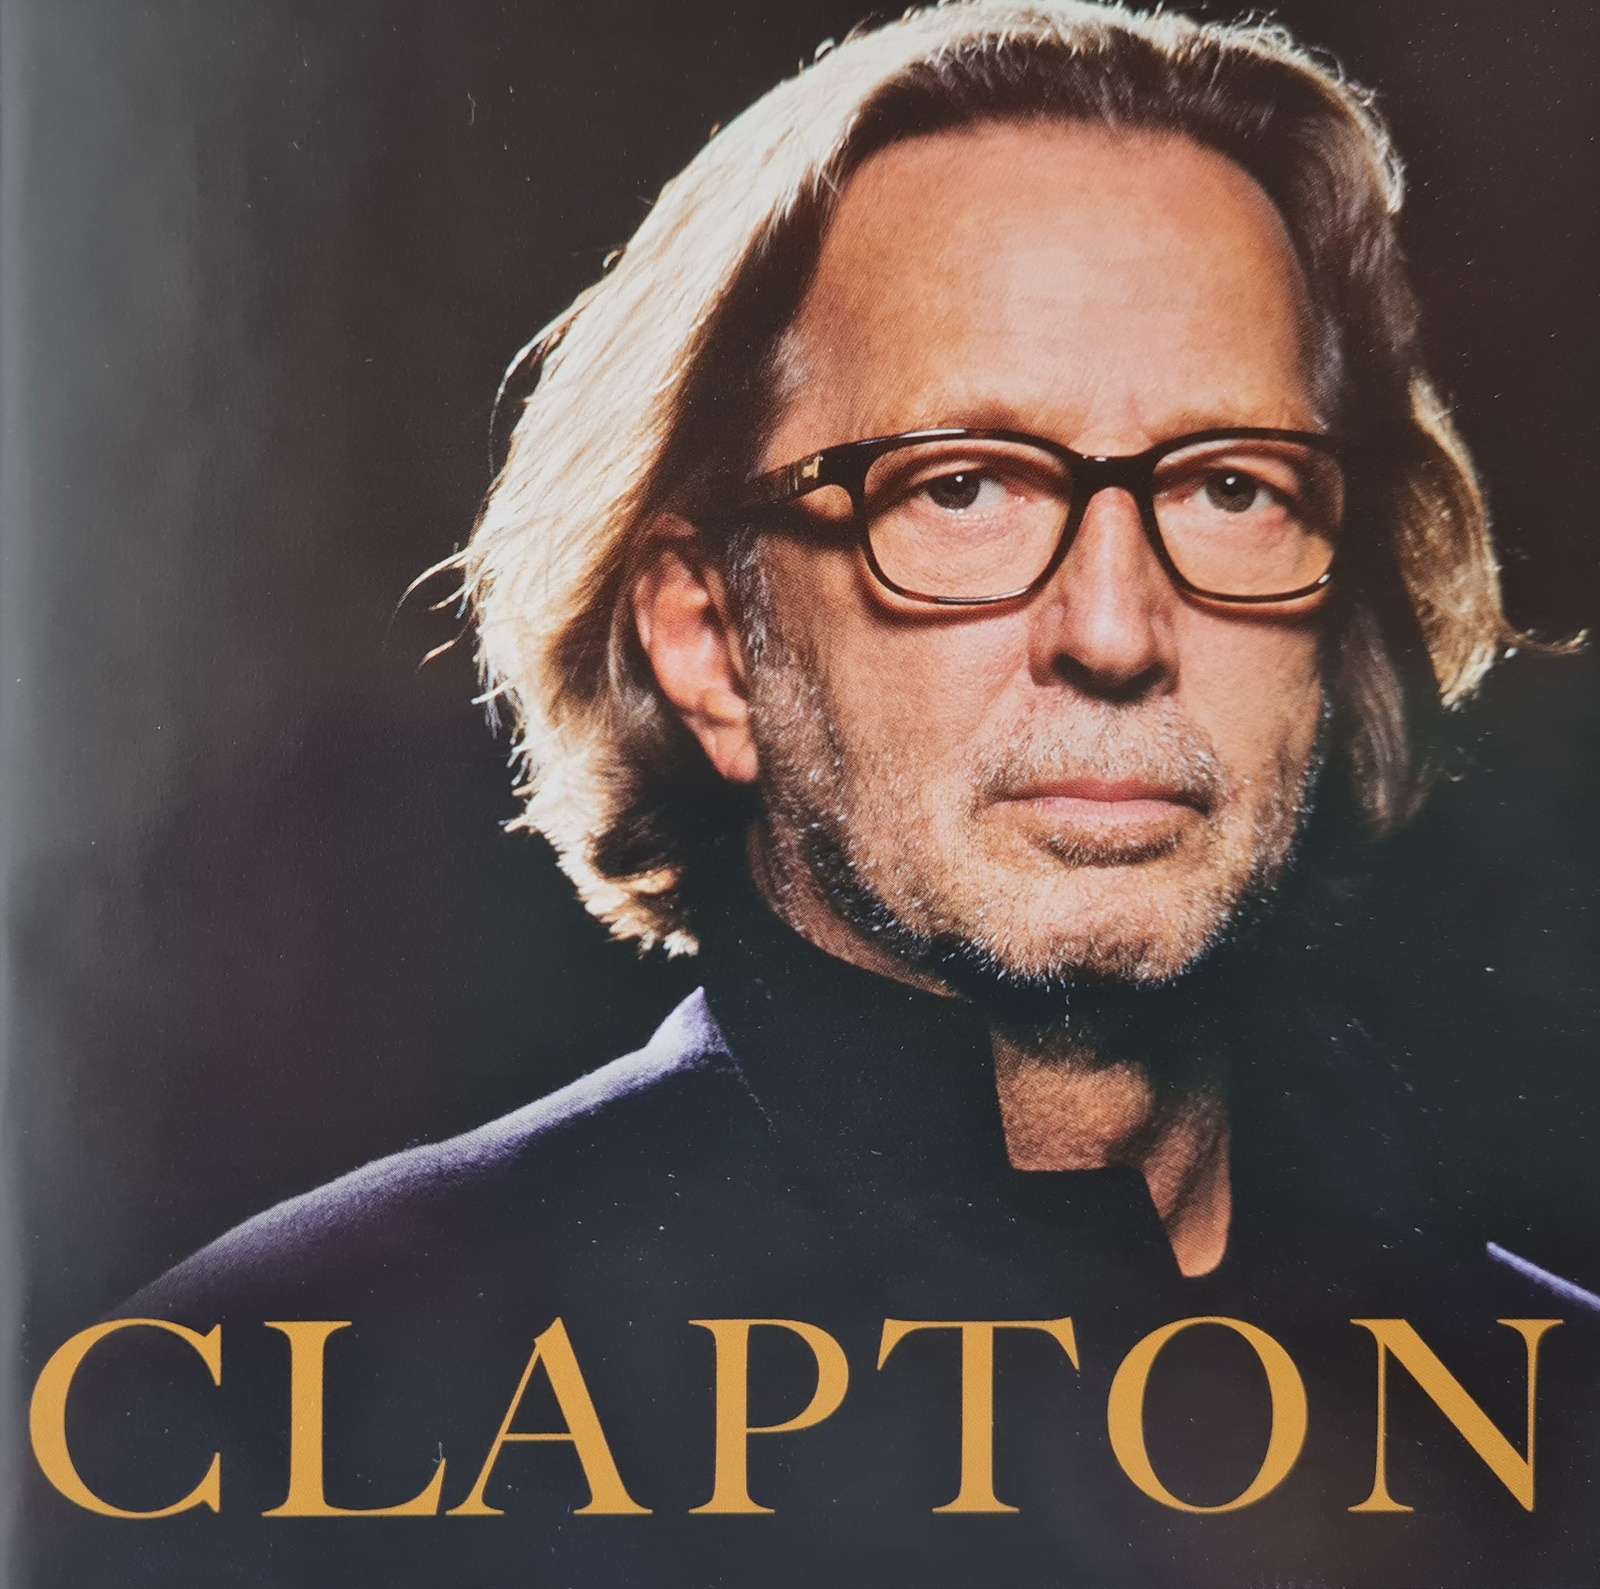 Eric Clapton - Clapton CD